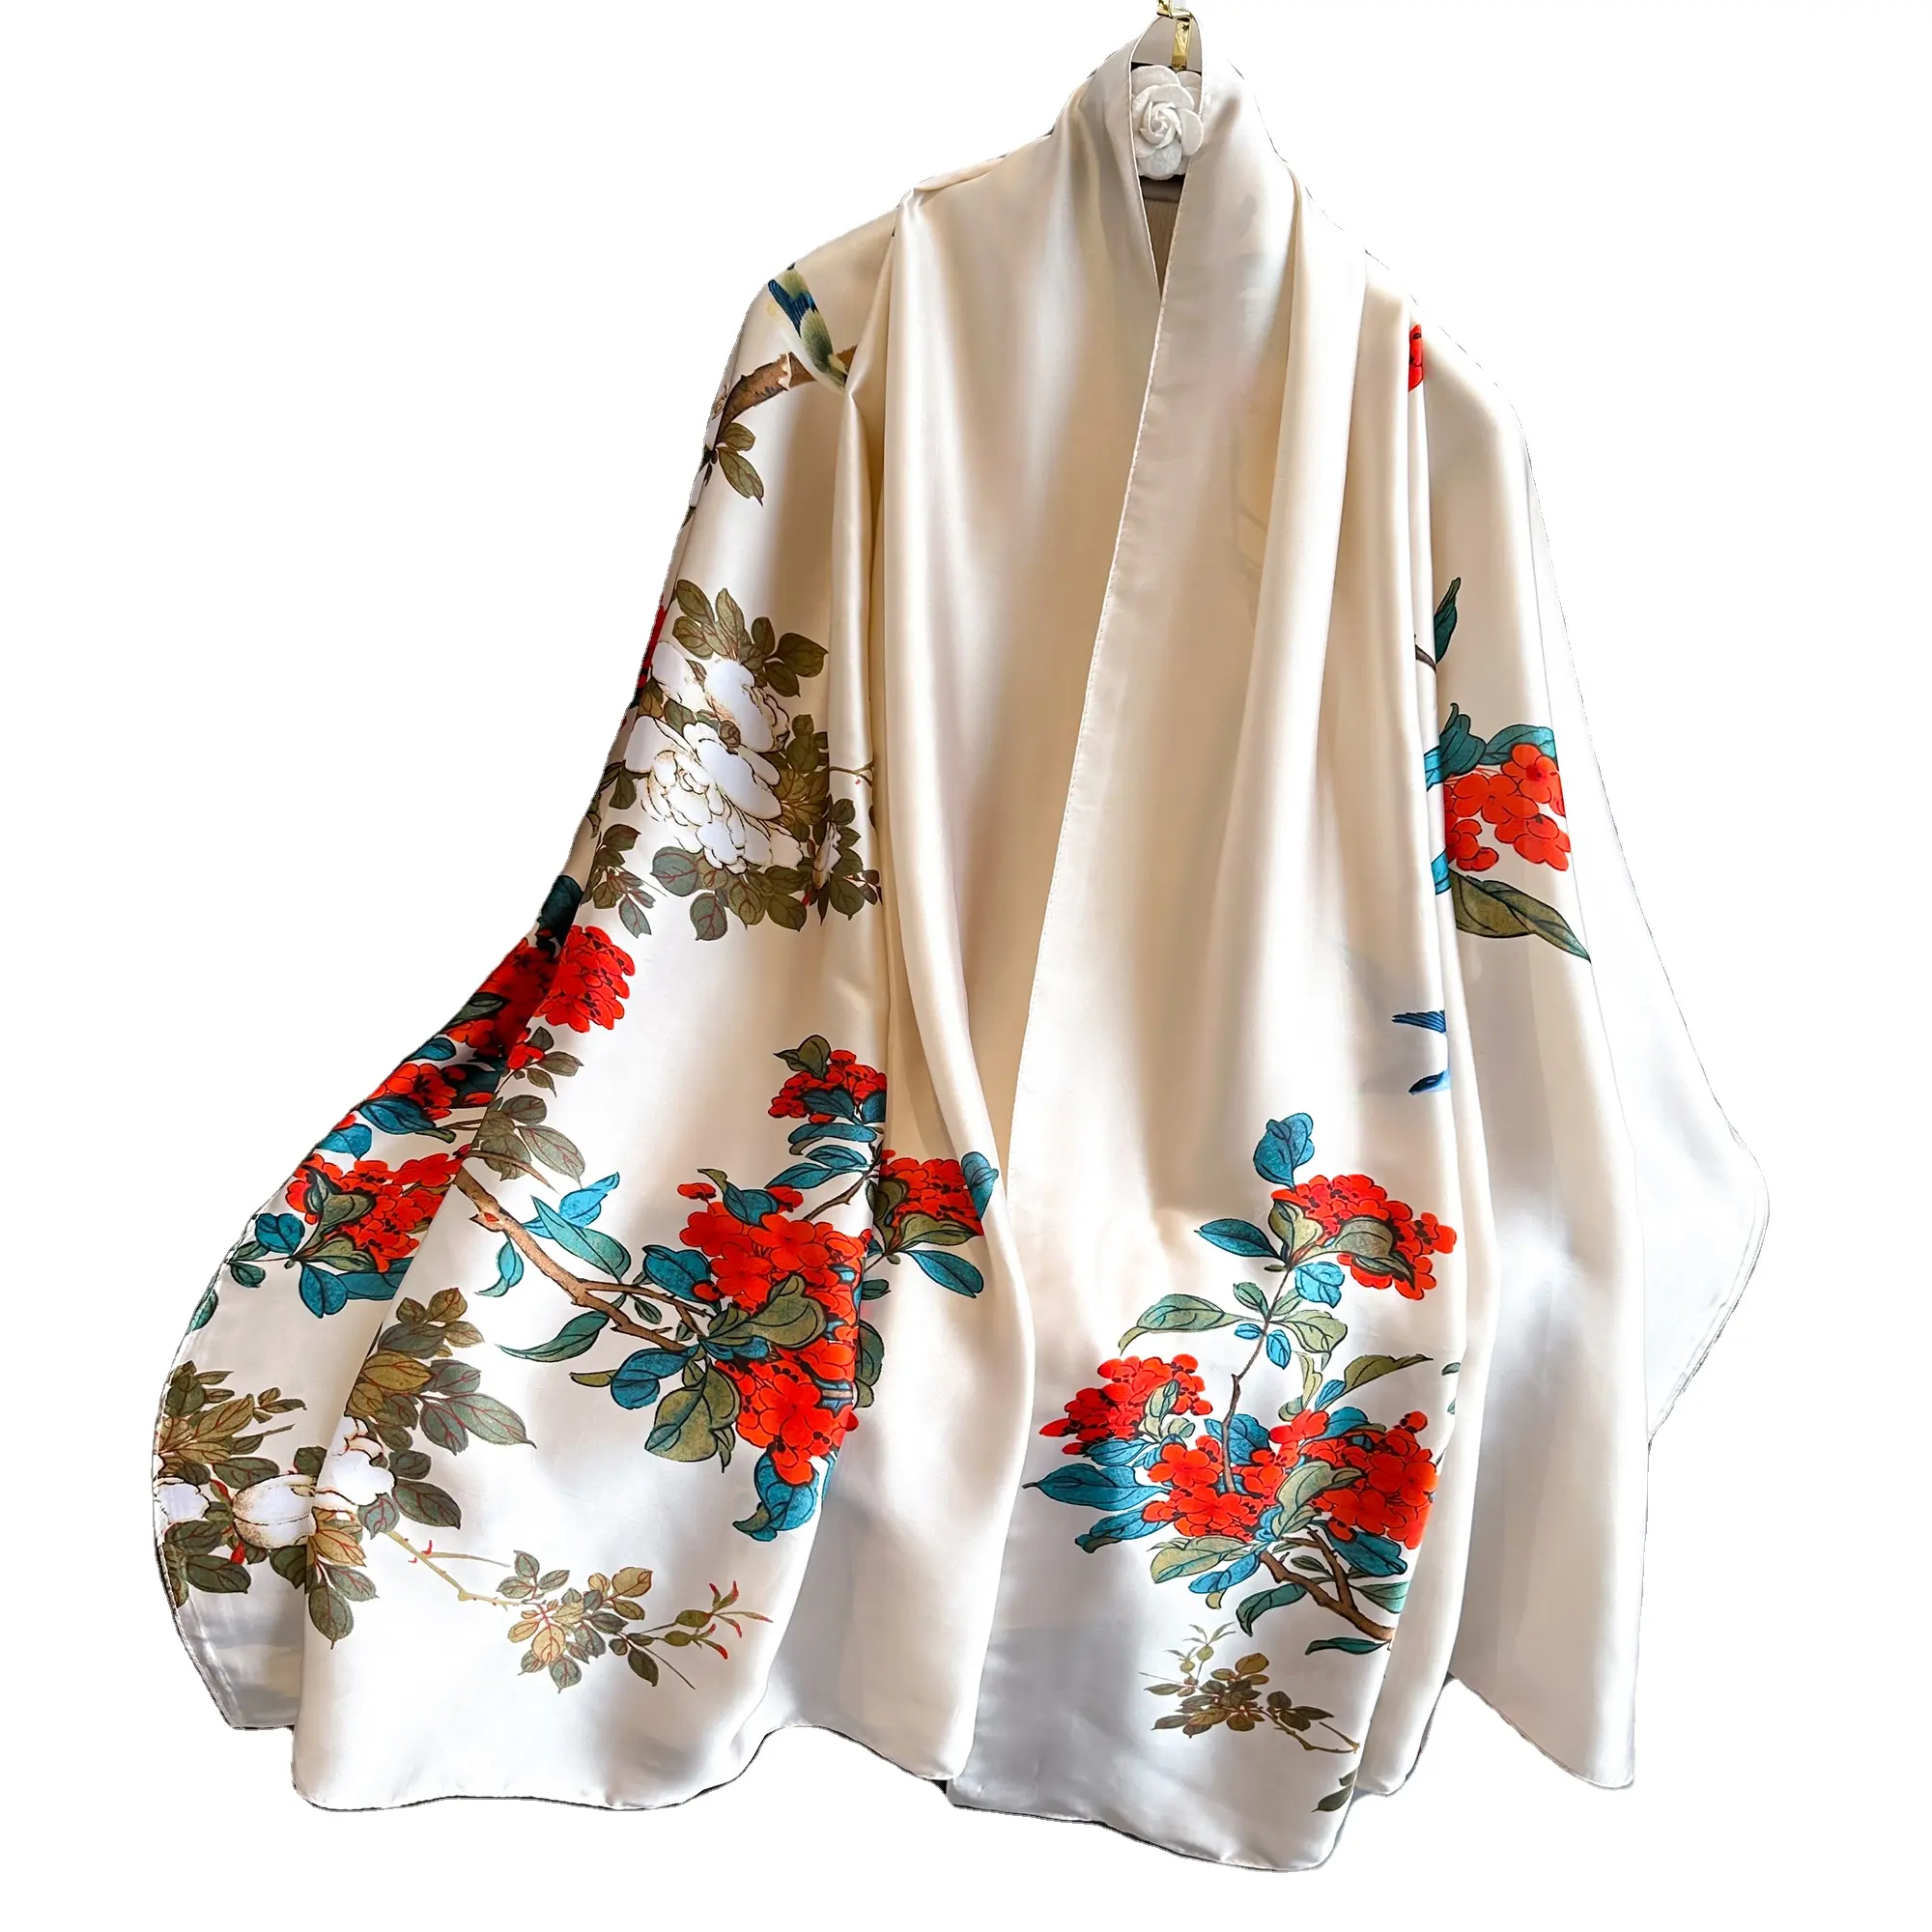 وشاح للسيدات مصنوع من الحرير يتميز بالأنقة والزهور وهو الشاح الصيني الوطني الذي يتميز بالطباعة الرقمية وإصدار جديد وشعار مخصص ويُباع بالجملة